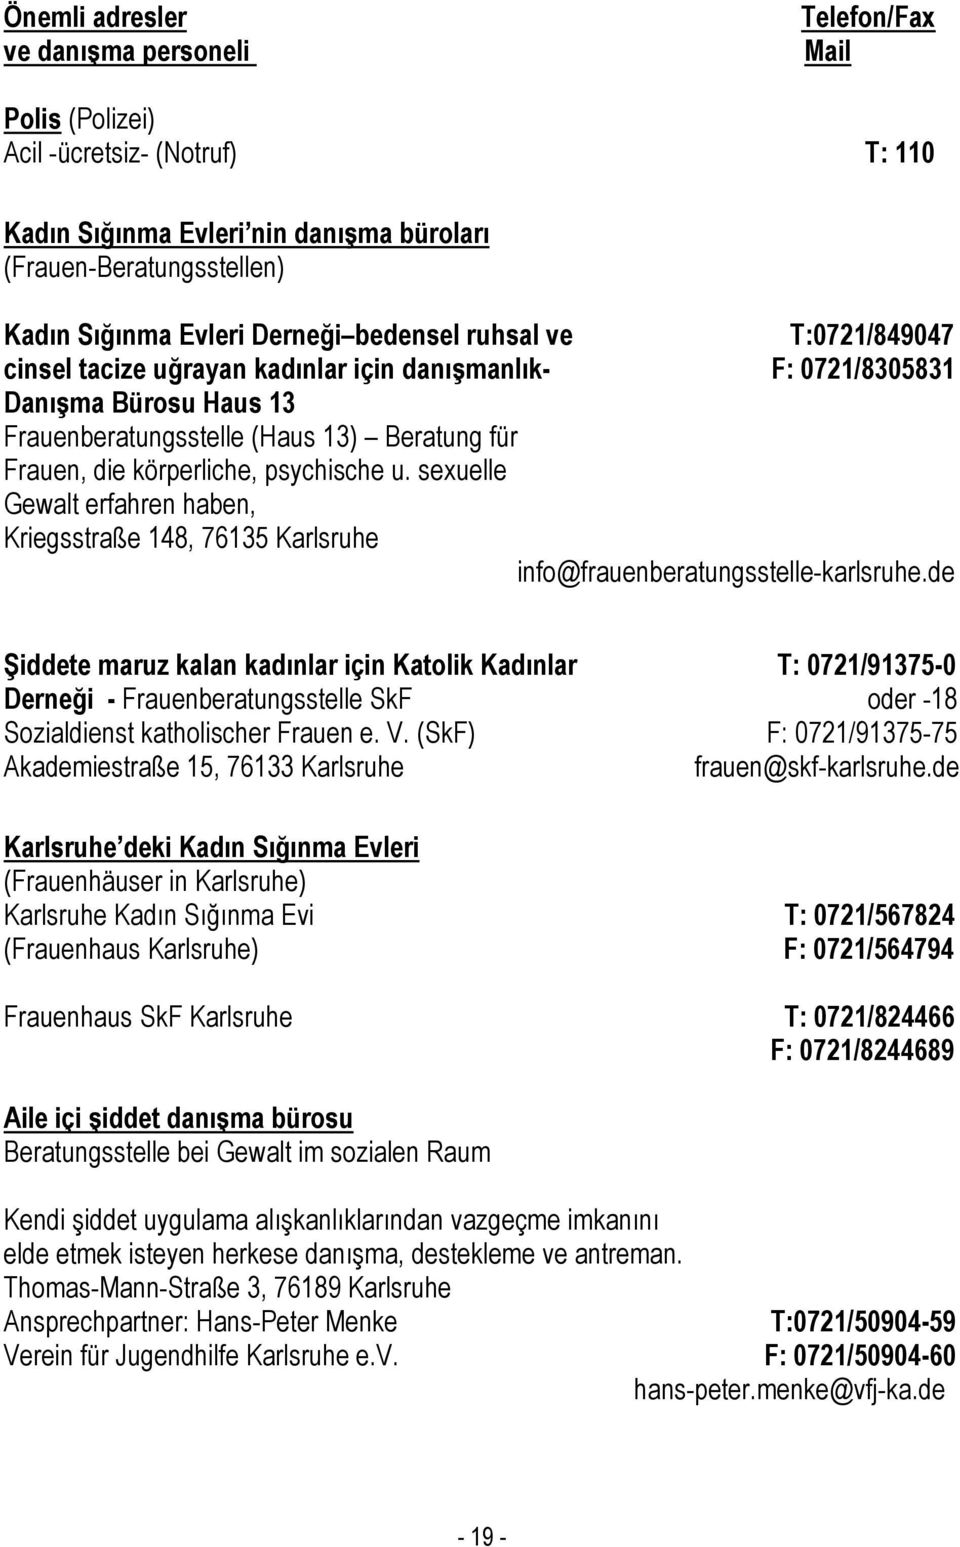 psychische u. sexuelle Gewalt erfahren haben, Kriegsstraße 148, 76135 Karlsruhe info@frauenberatungsstelle-karlsruhe.